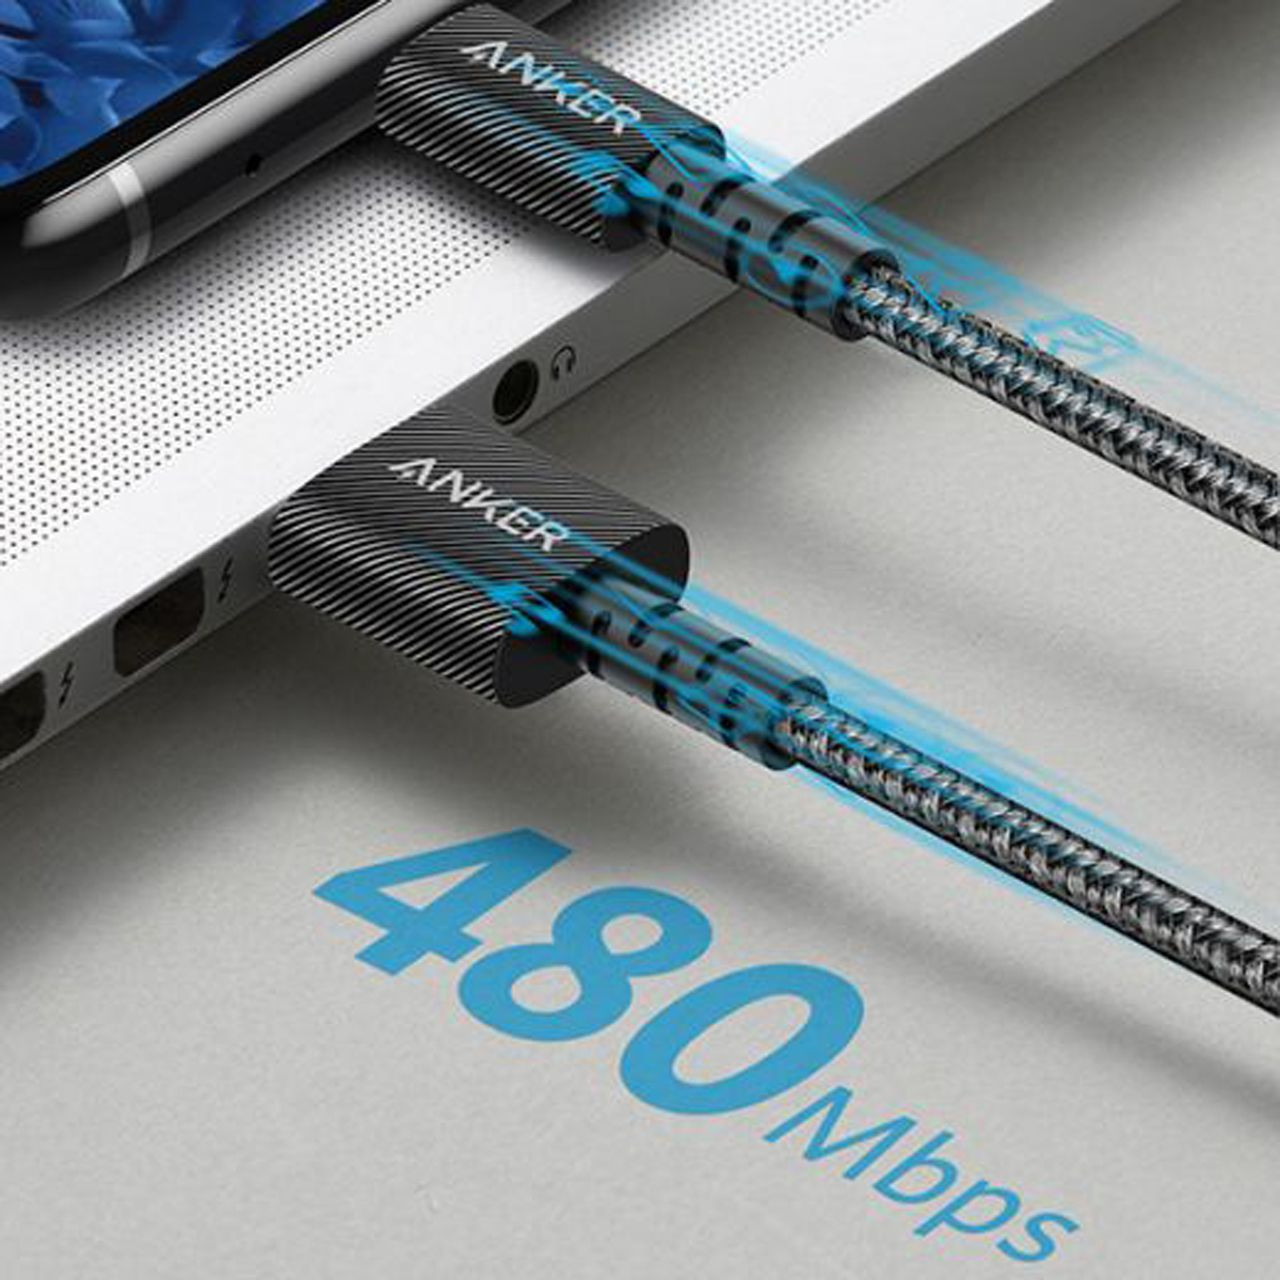 کابل تبدیل USB به USB-C انکر مدل A8022 PowerLine Select Plus طول 0.9 متر